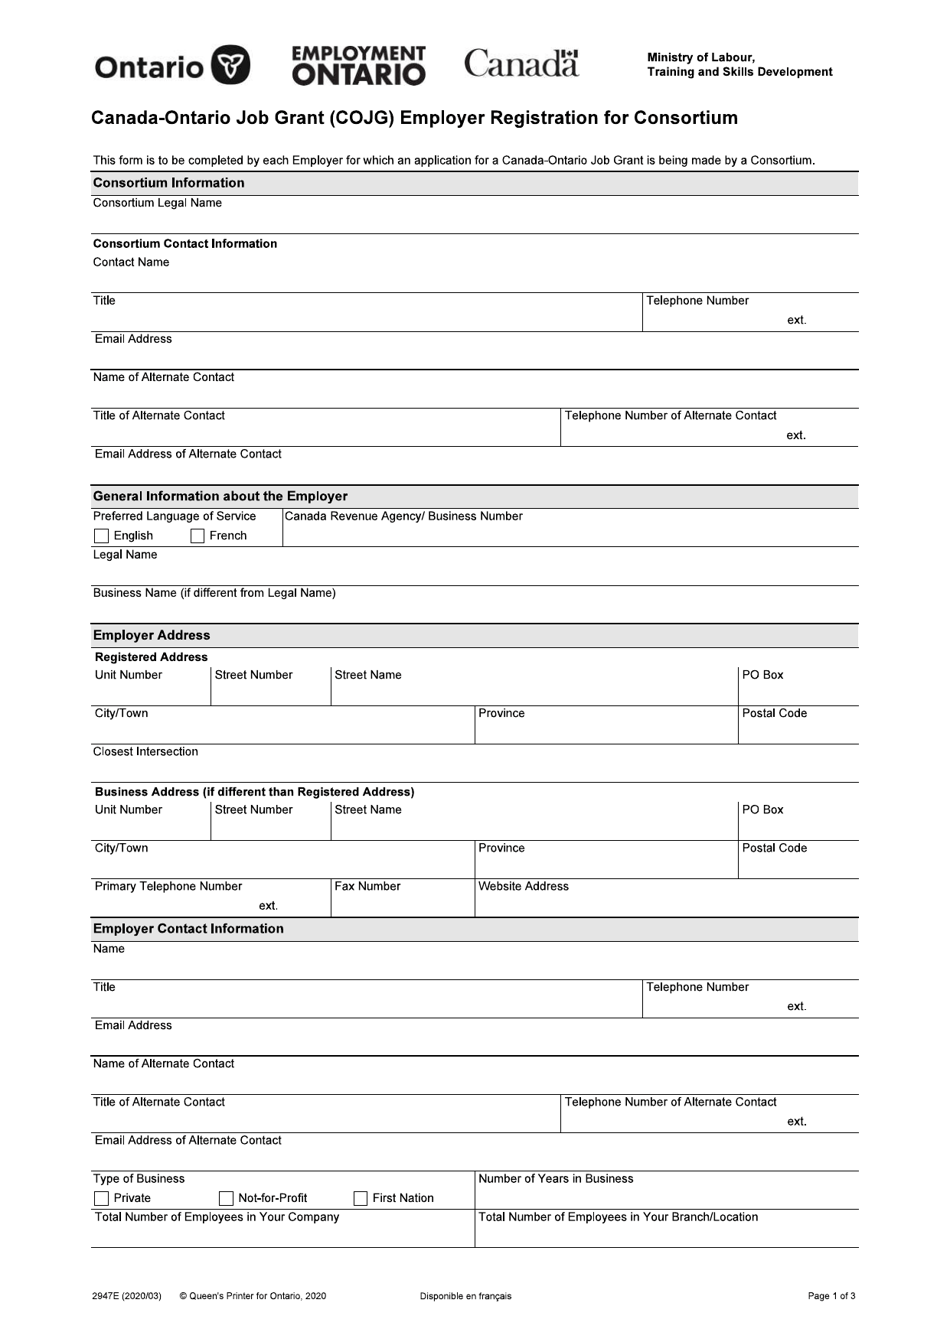 Form 2947E Canada-Ontario Job Grant (Cojg) Employer Registration for Consortium - Ontario, Canada, Page 1